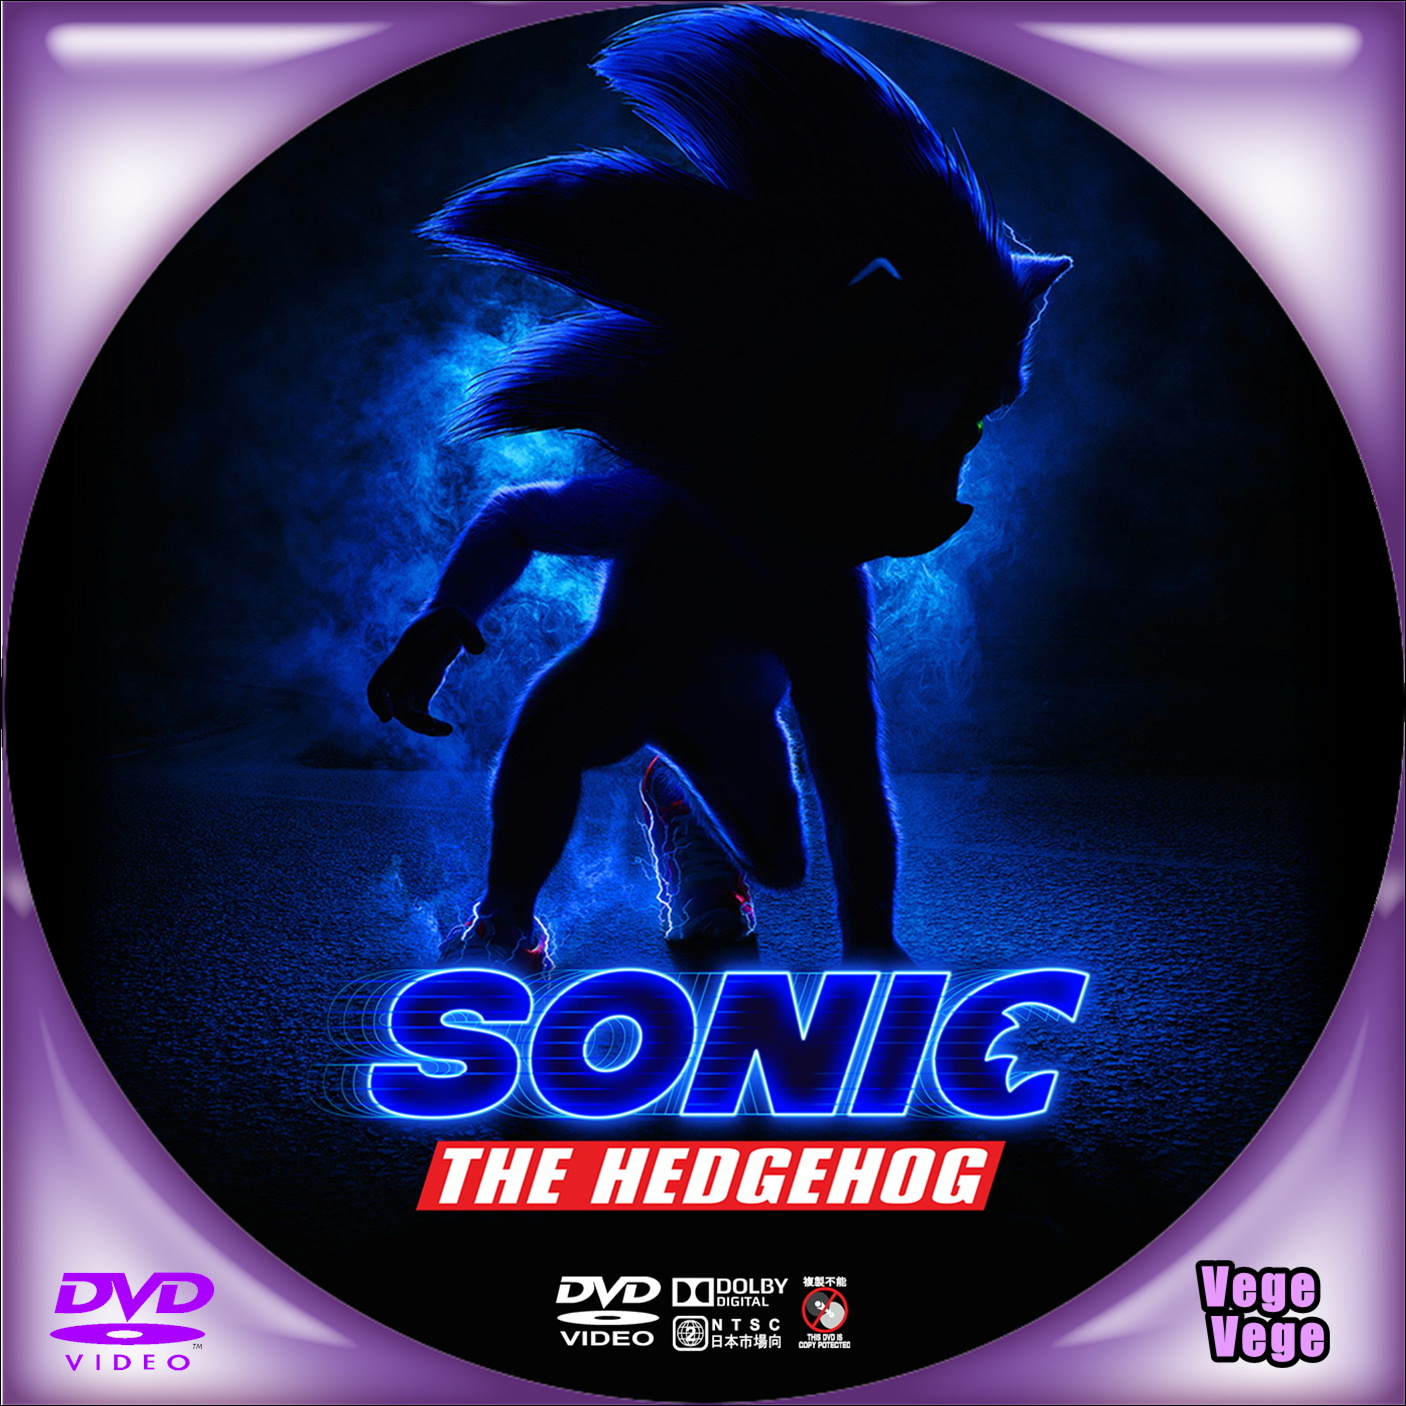 ソニックザムービー dvdラベル ソニック・ザ・ムービー／sonic the hedgehog
(2020)